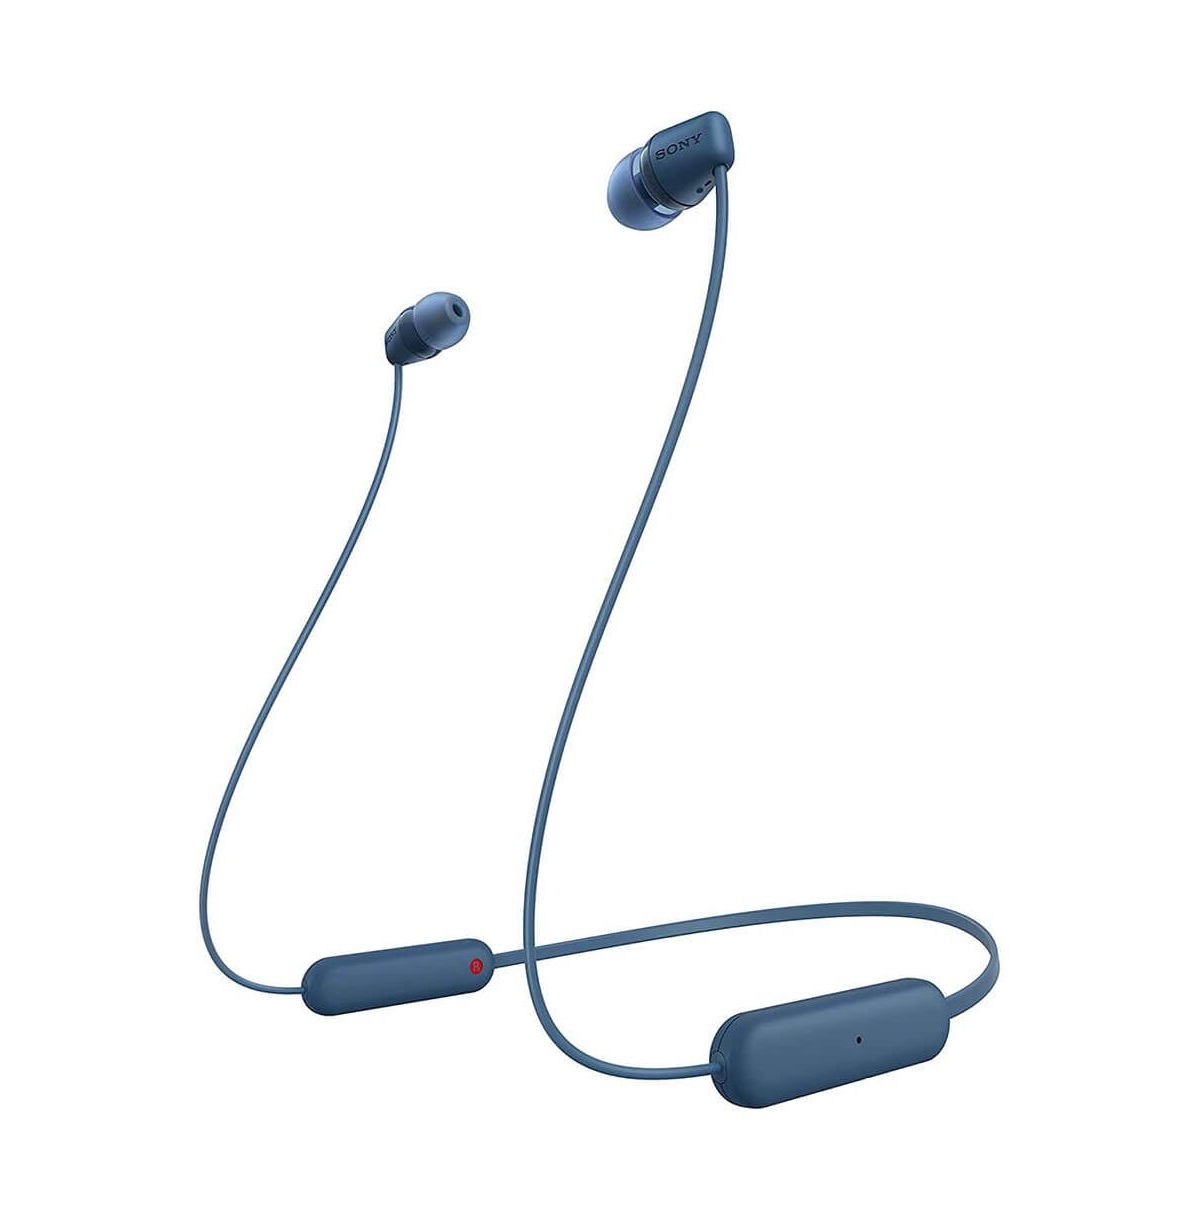 Sony Wireless In-ear Headphones In Blue